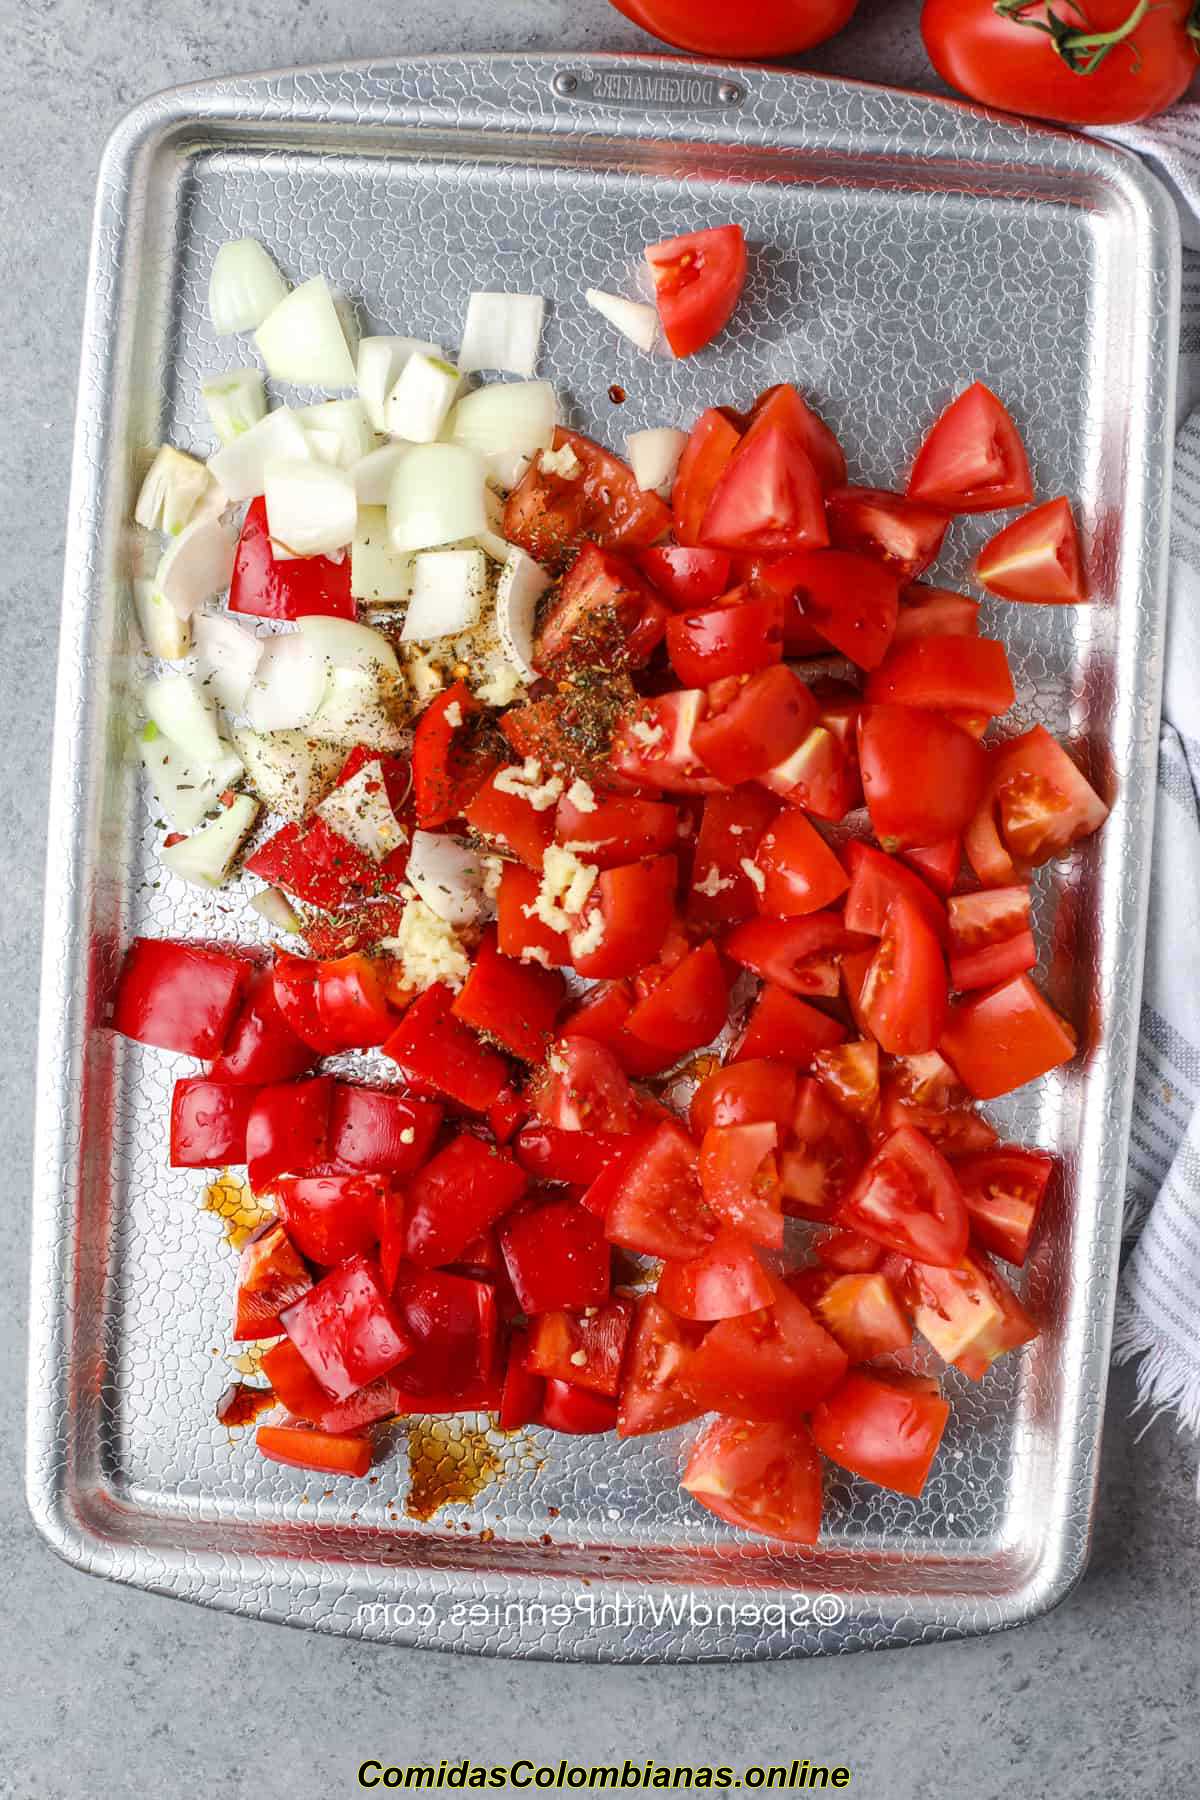 adicionando temperos aos tomates e cebola para fazer a sopa Kielbasa